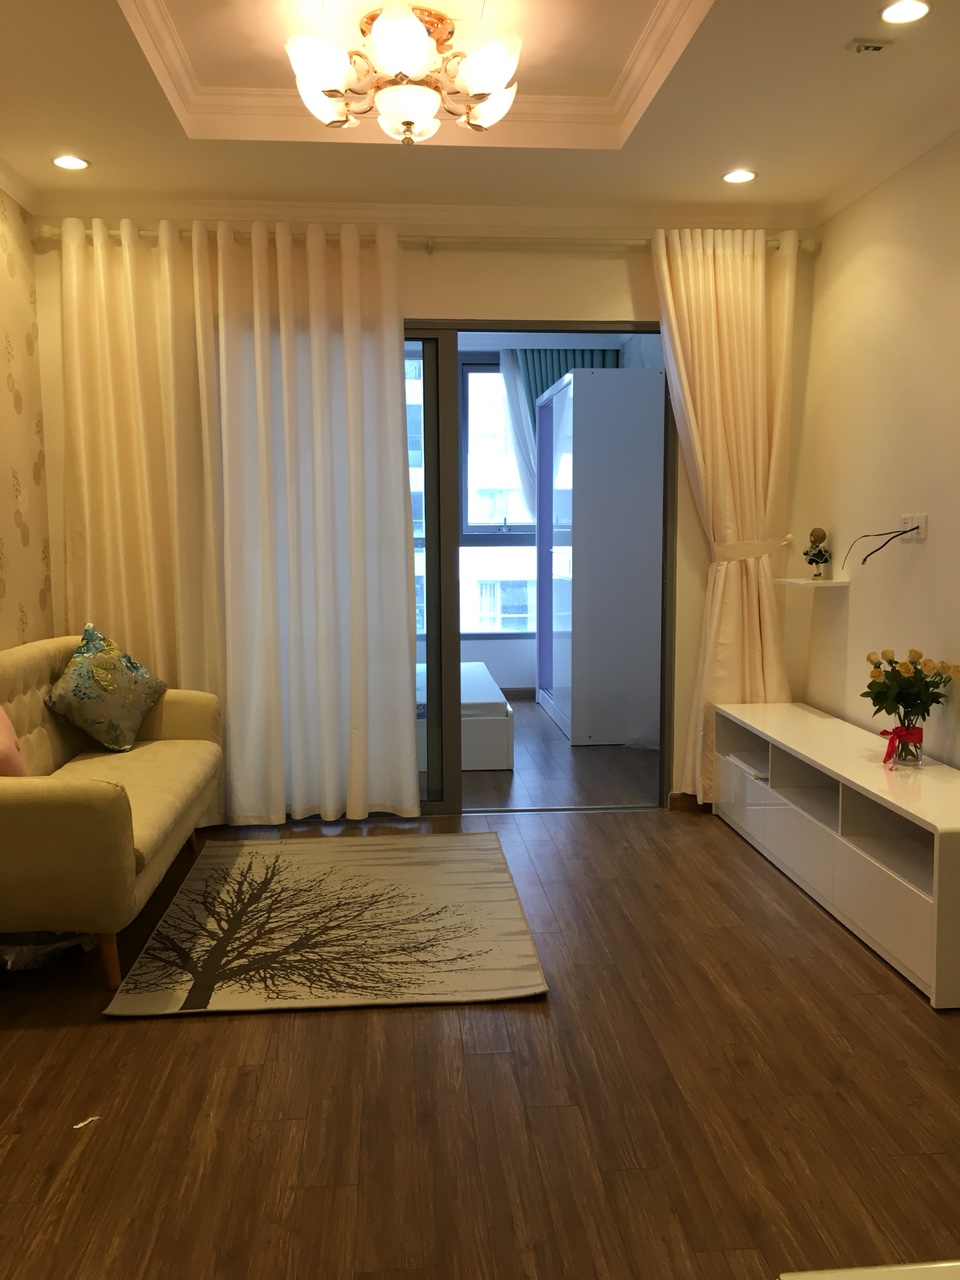 Căn hộ Star City- Số 81 Lê Văn Lương 1 phòng ngủ đầy đủ nội thất cho thuê, giá 11 triệu/tháng. Liên hệ: 01678.182.667 713086